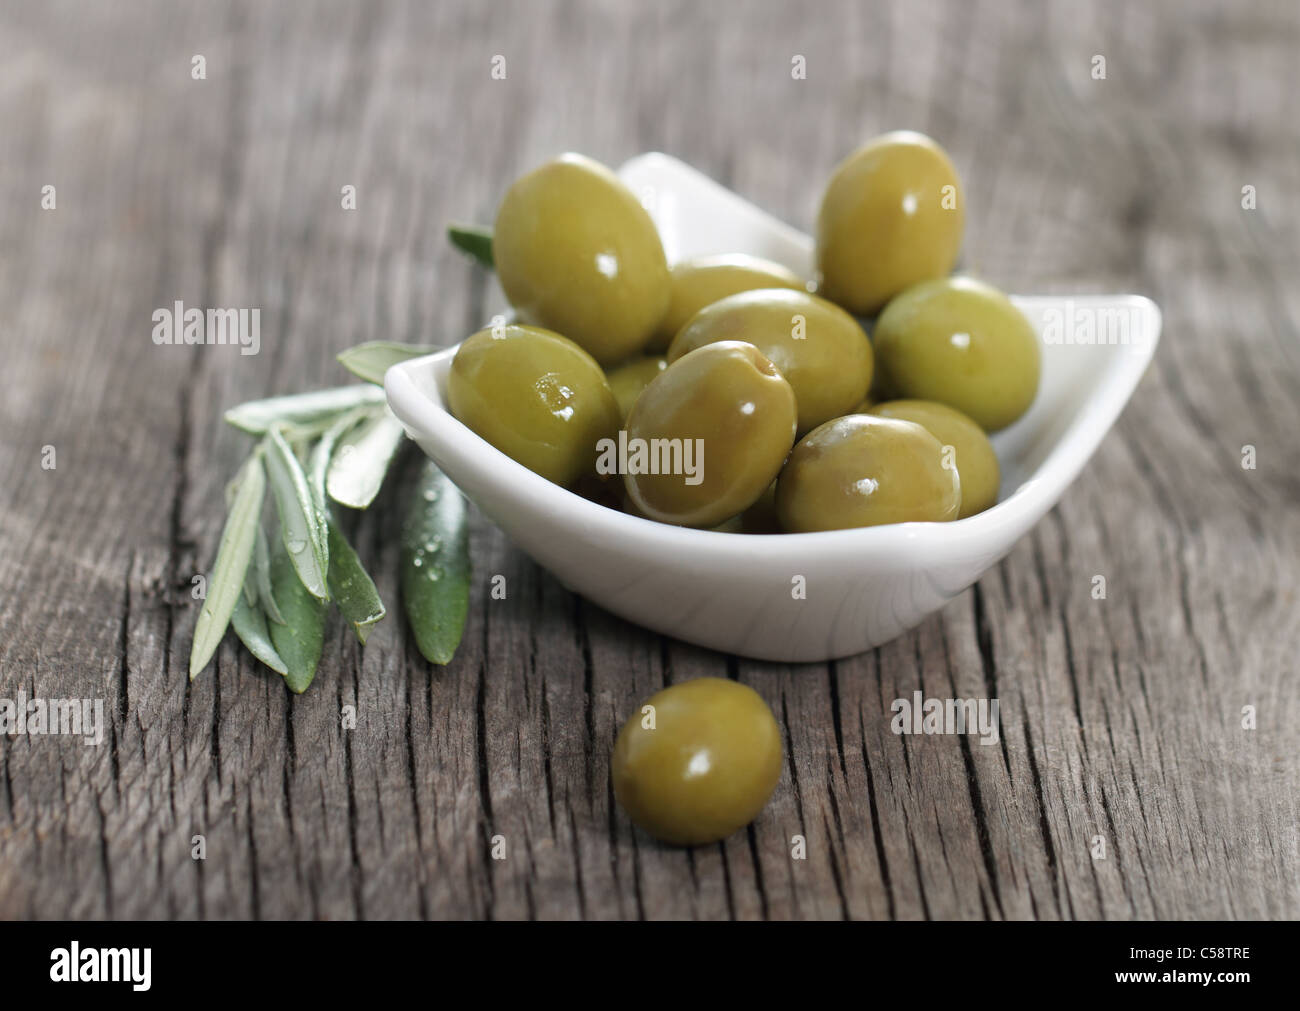 Чем можно заменить оливки. Чем можно заменить оливковое масло. Чем заменить маслины. Замена оливок в са. Чем заменить оливковое масло